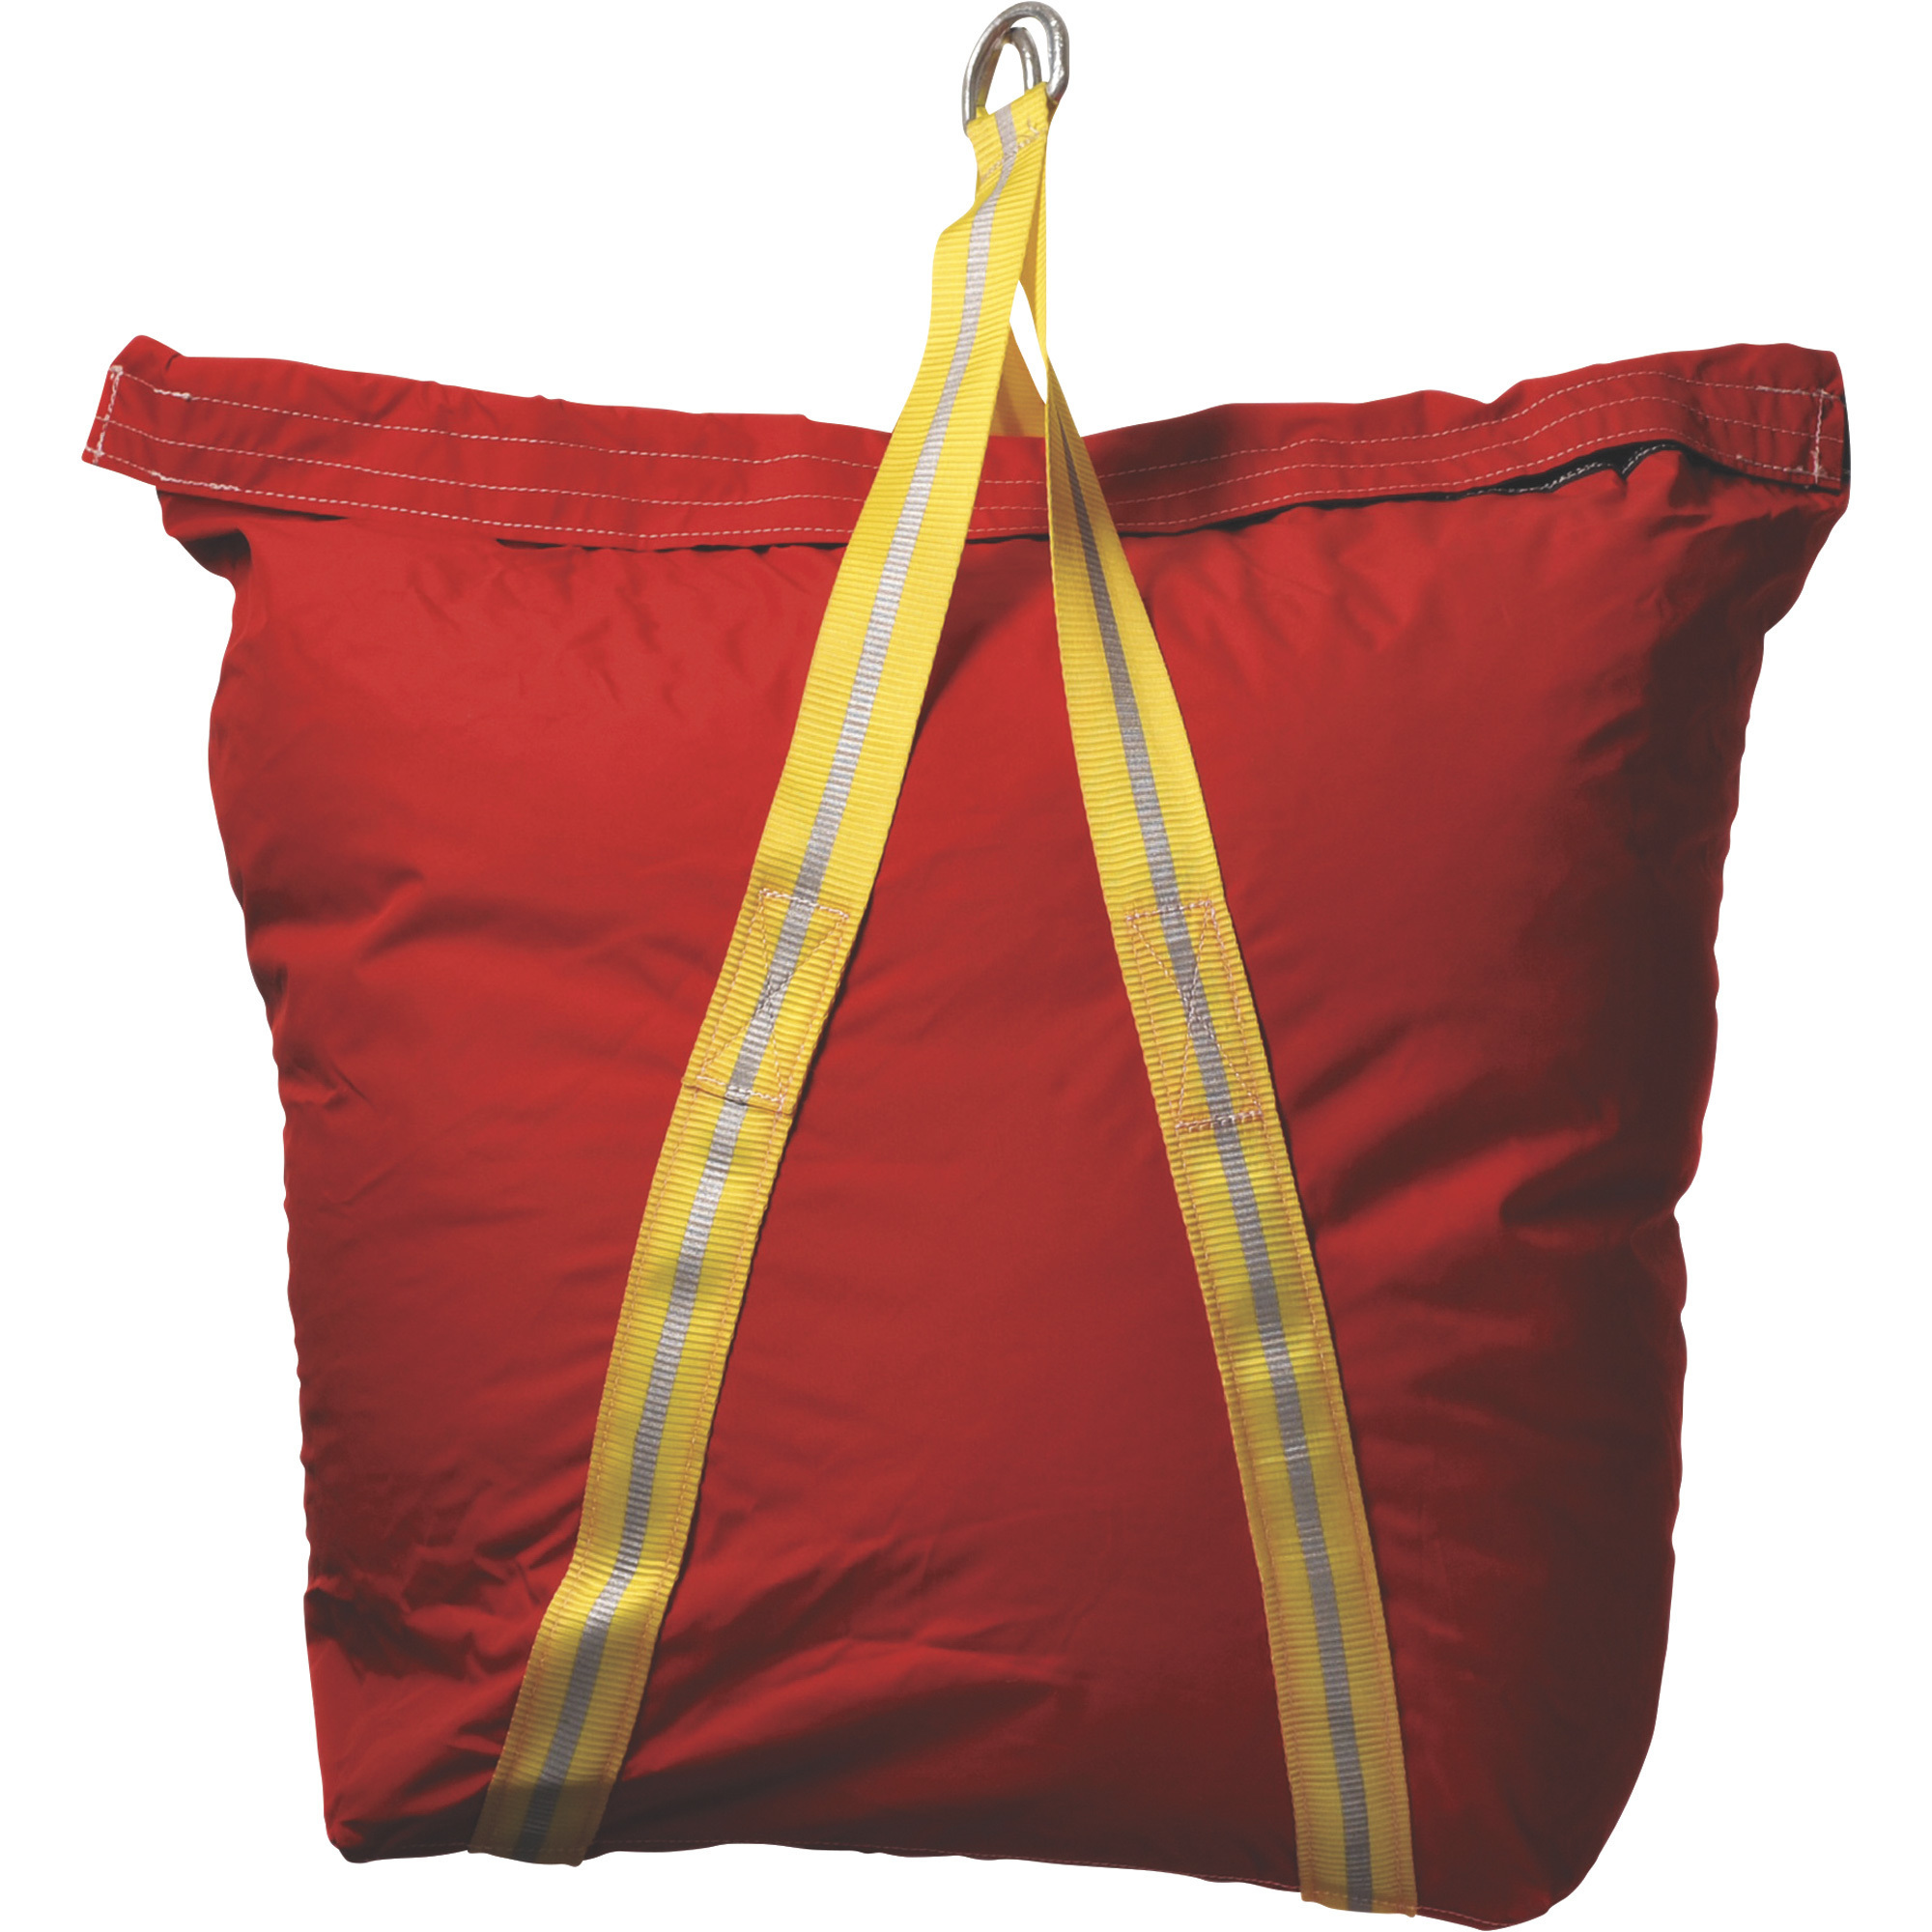 Big Boxer Industrial Canvas Lifting Tool Bag â Red, 24Inch W x 9Inch D x 30Inch H, Model 70016